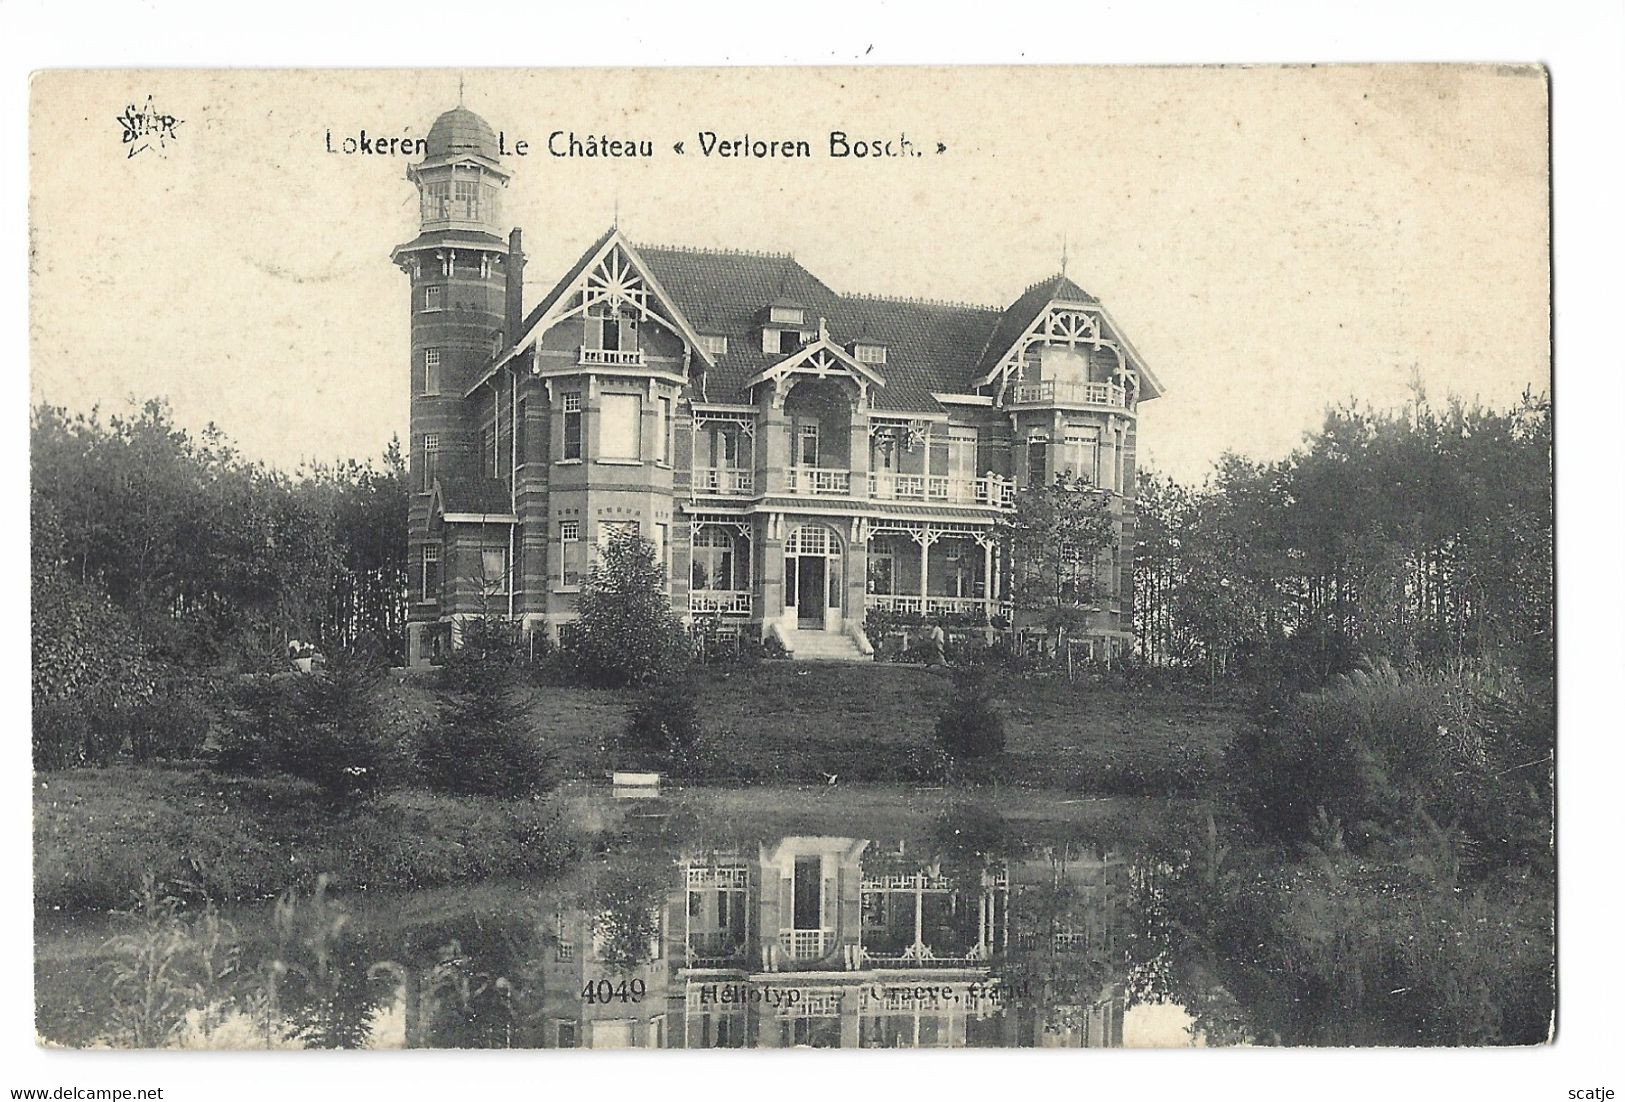 Lokeren.   -   Le Château  "Verloren Bosch".   Zeer Mooie Kaart!   -   1906   Naar   Berchem - Lokeren